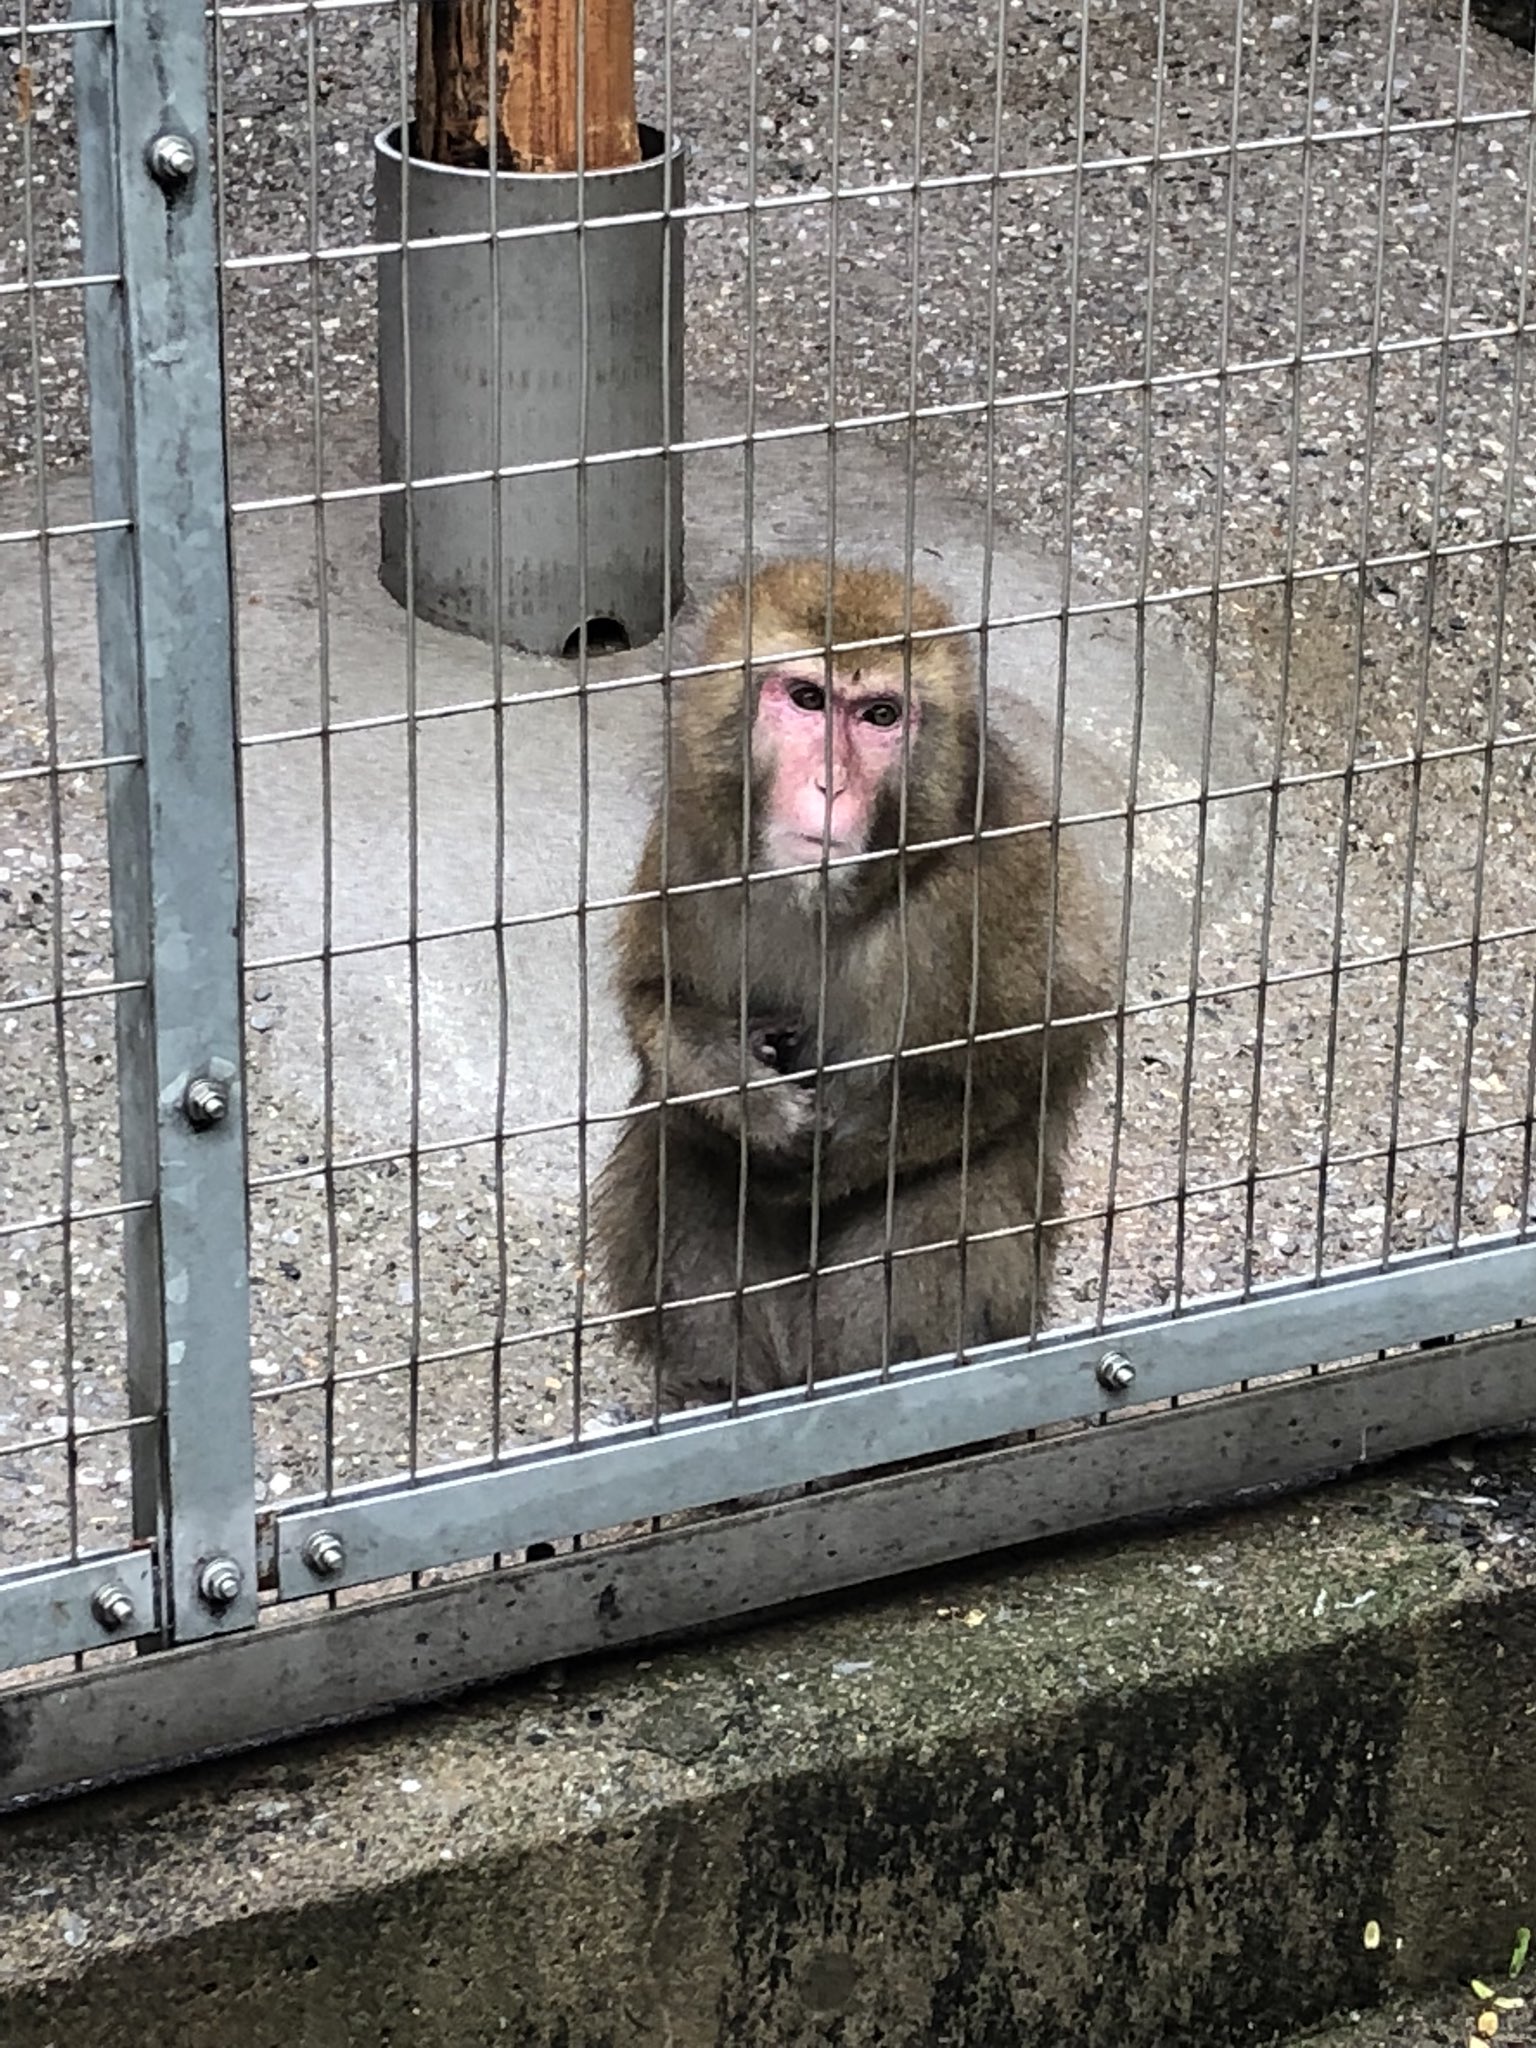 Twitter पर ゆいたそ 上野動物園の猿おもしろすぎるww 控えめにようこそって言ってる感じの猿と 猿山の頂点でイチャコラする猿 2人のすぐ下で孤独を隠せない猿 めちゃ可愛い T Co F7hgc2q8o0 Twitter